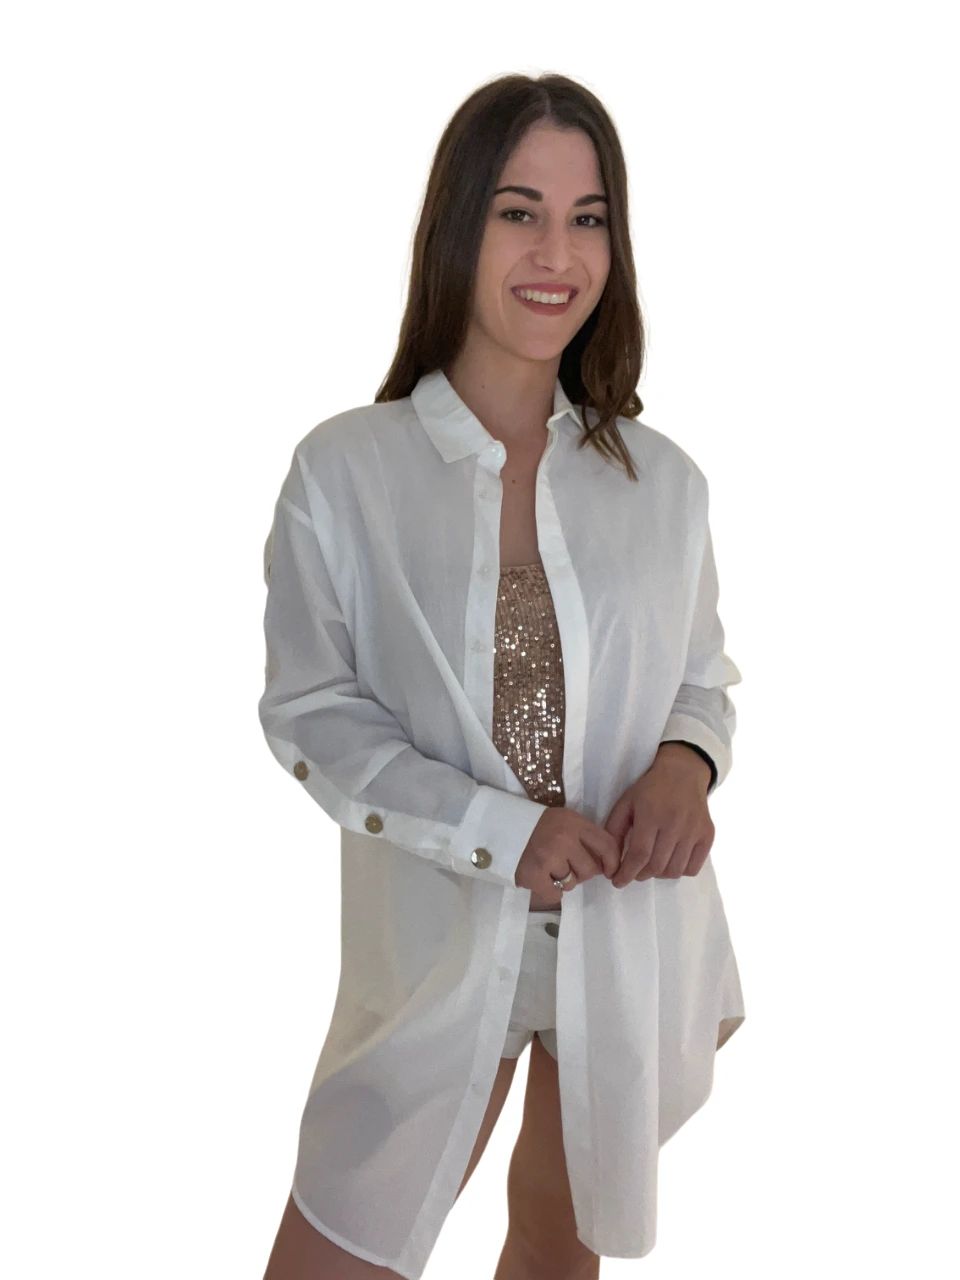 Γυναικείο μακρύ πουκάμισο άσπρο